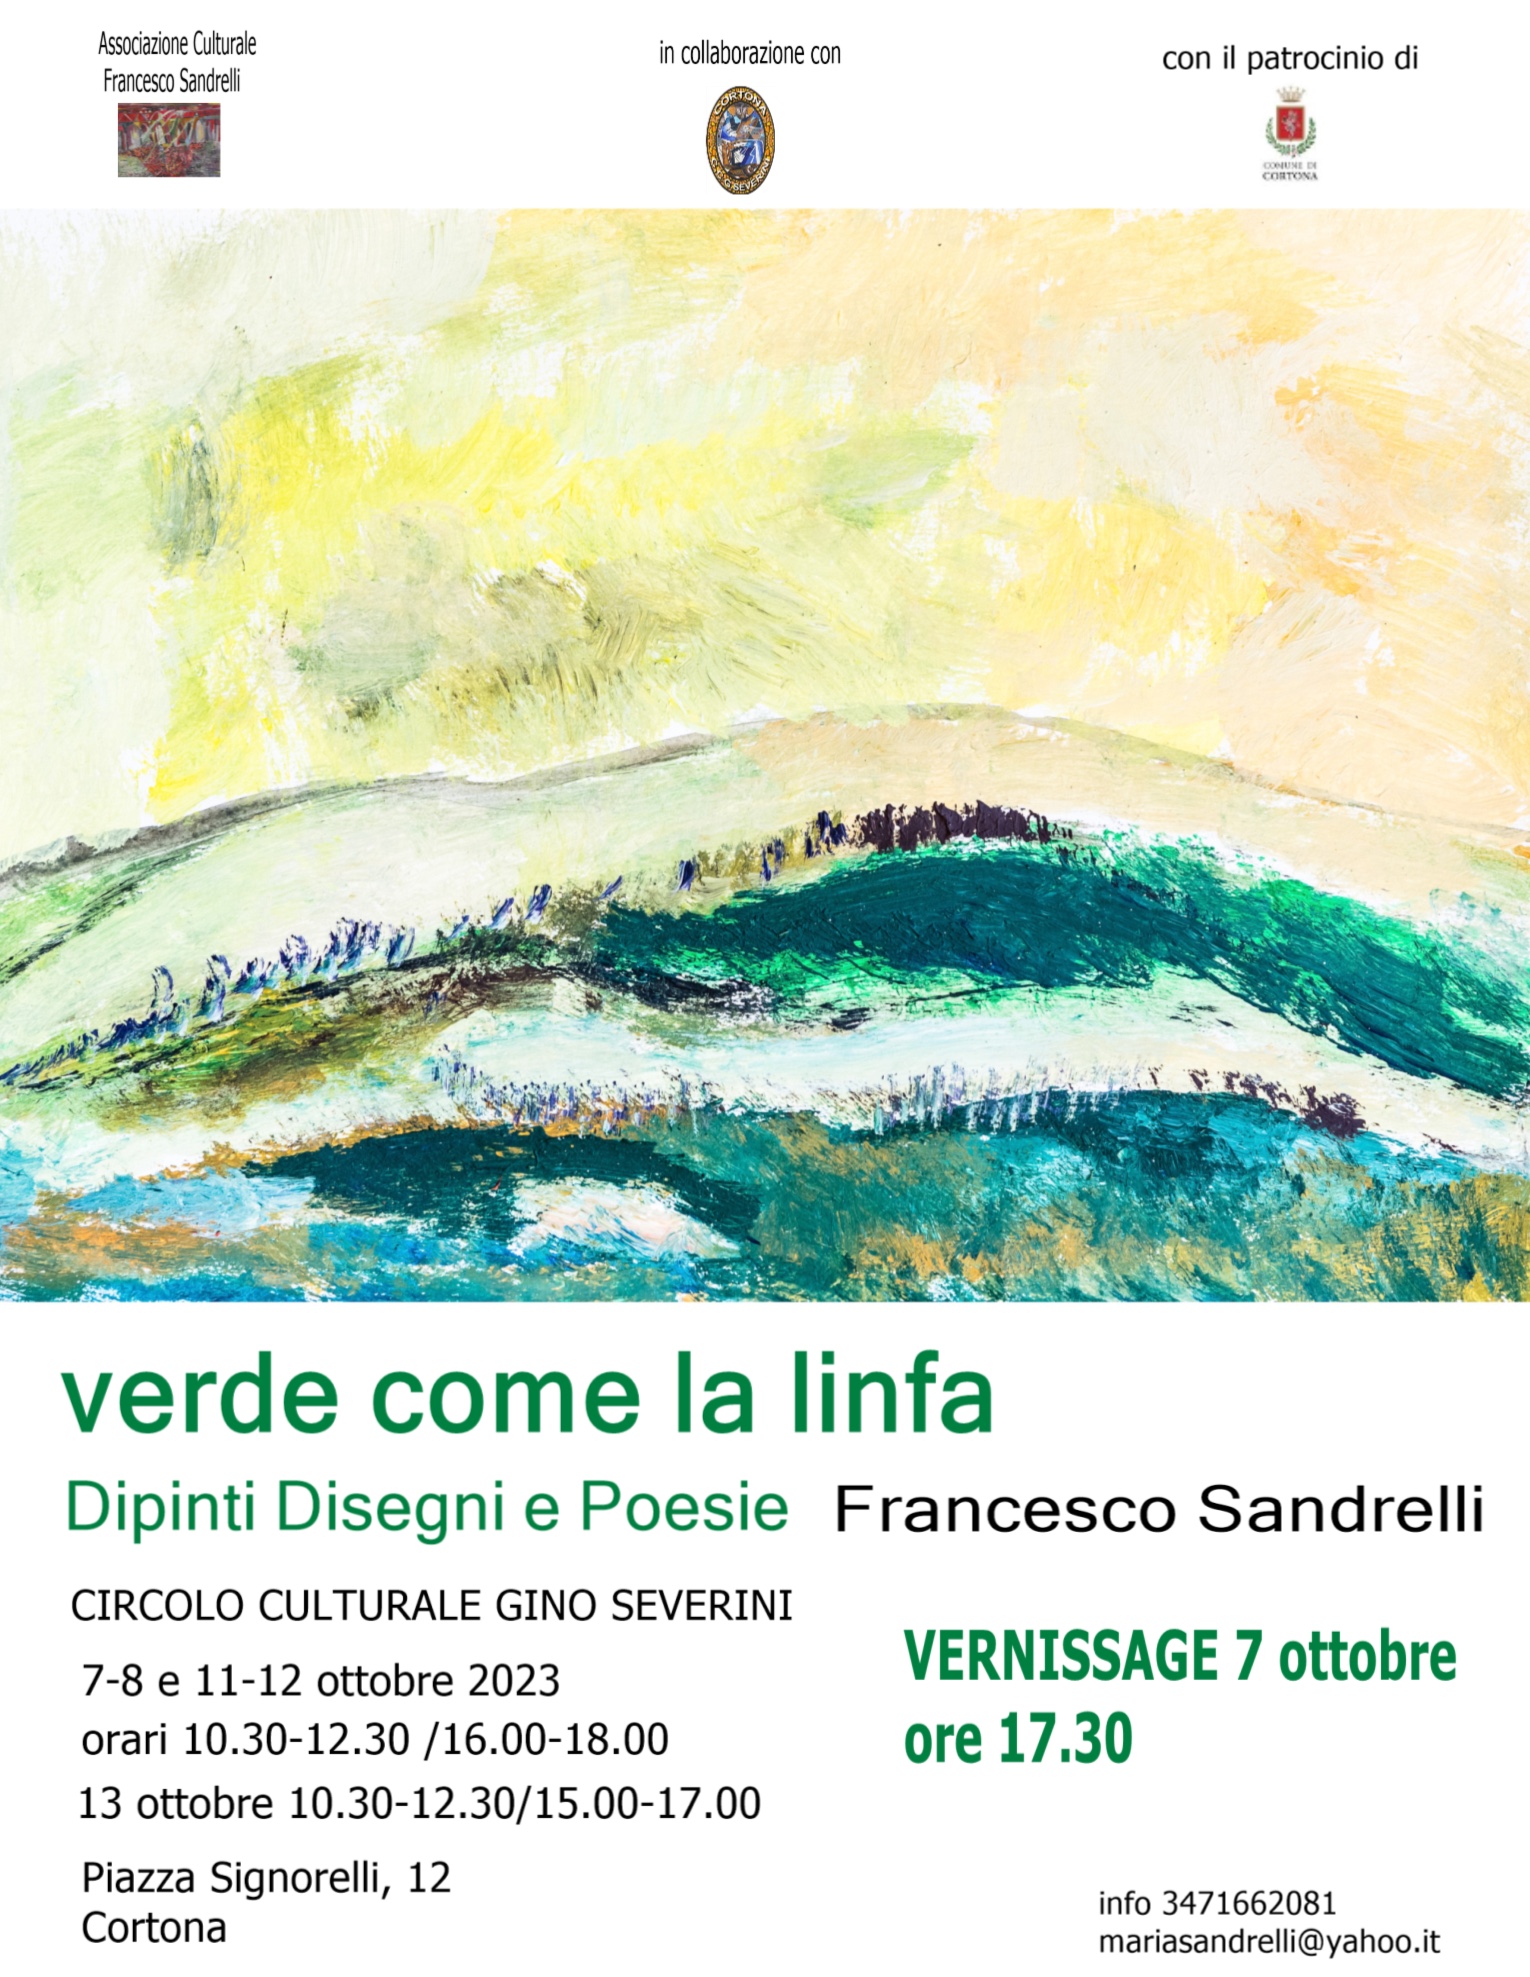 Verde come la linfa: dipinti, disegni e poesia di Francesco Sandrelli